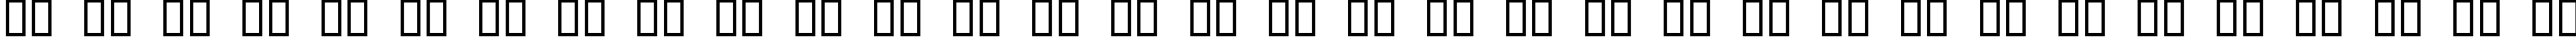 Пример написания русского алфавита шрифтом monoeger 05_55